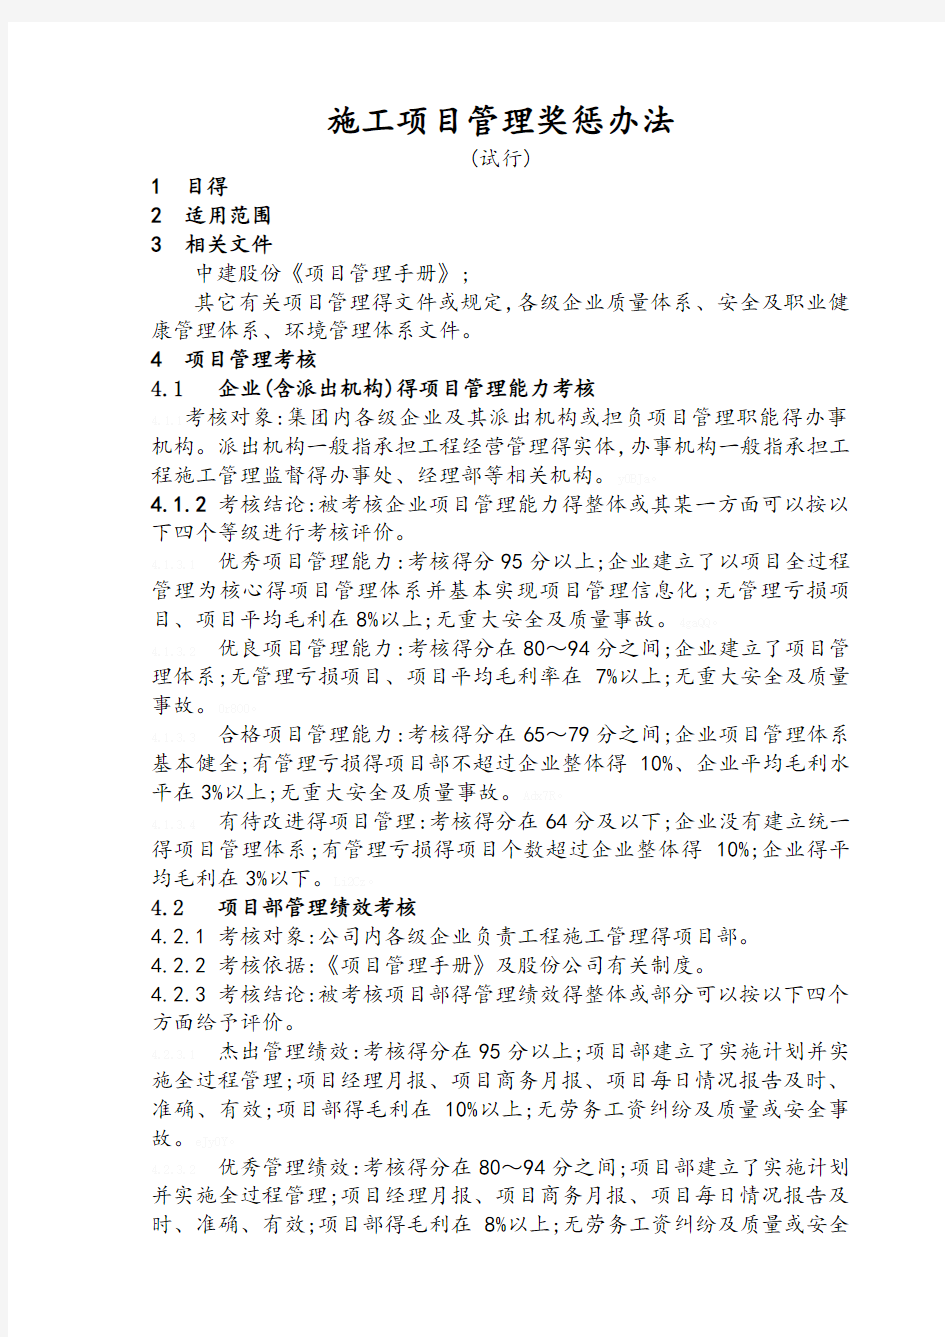 中国建筑工程施工项目管理考核办法及表格